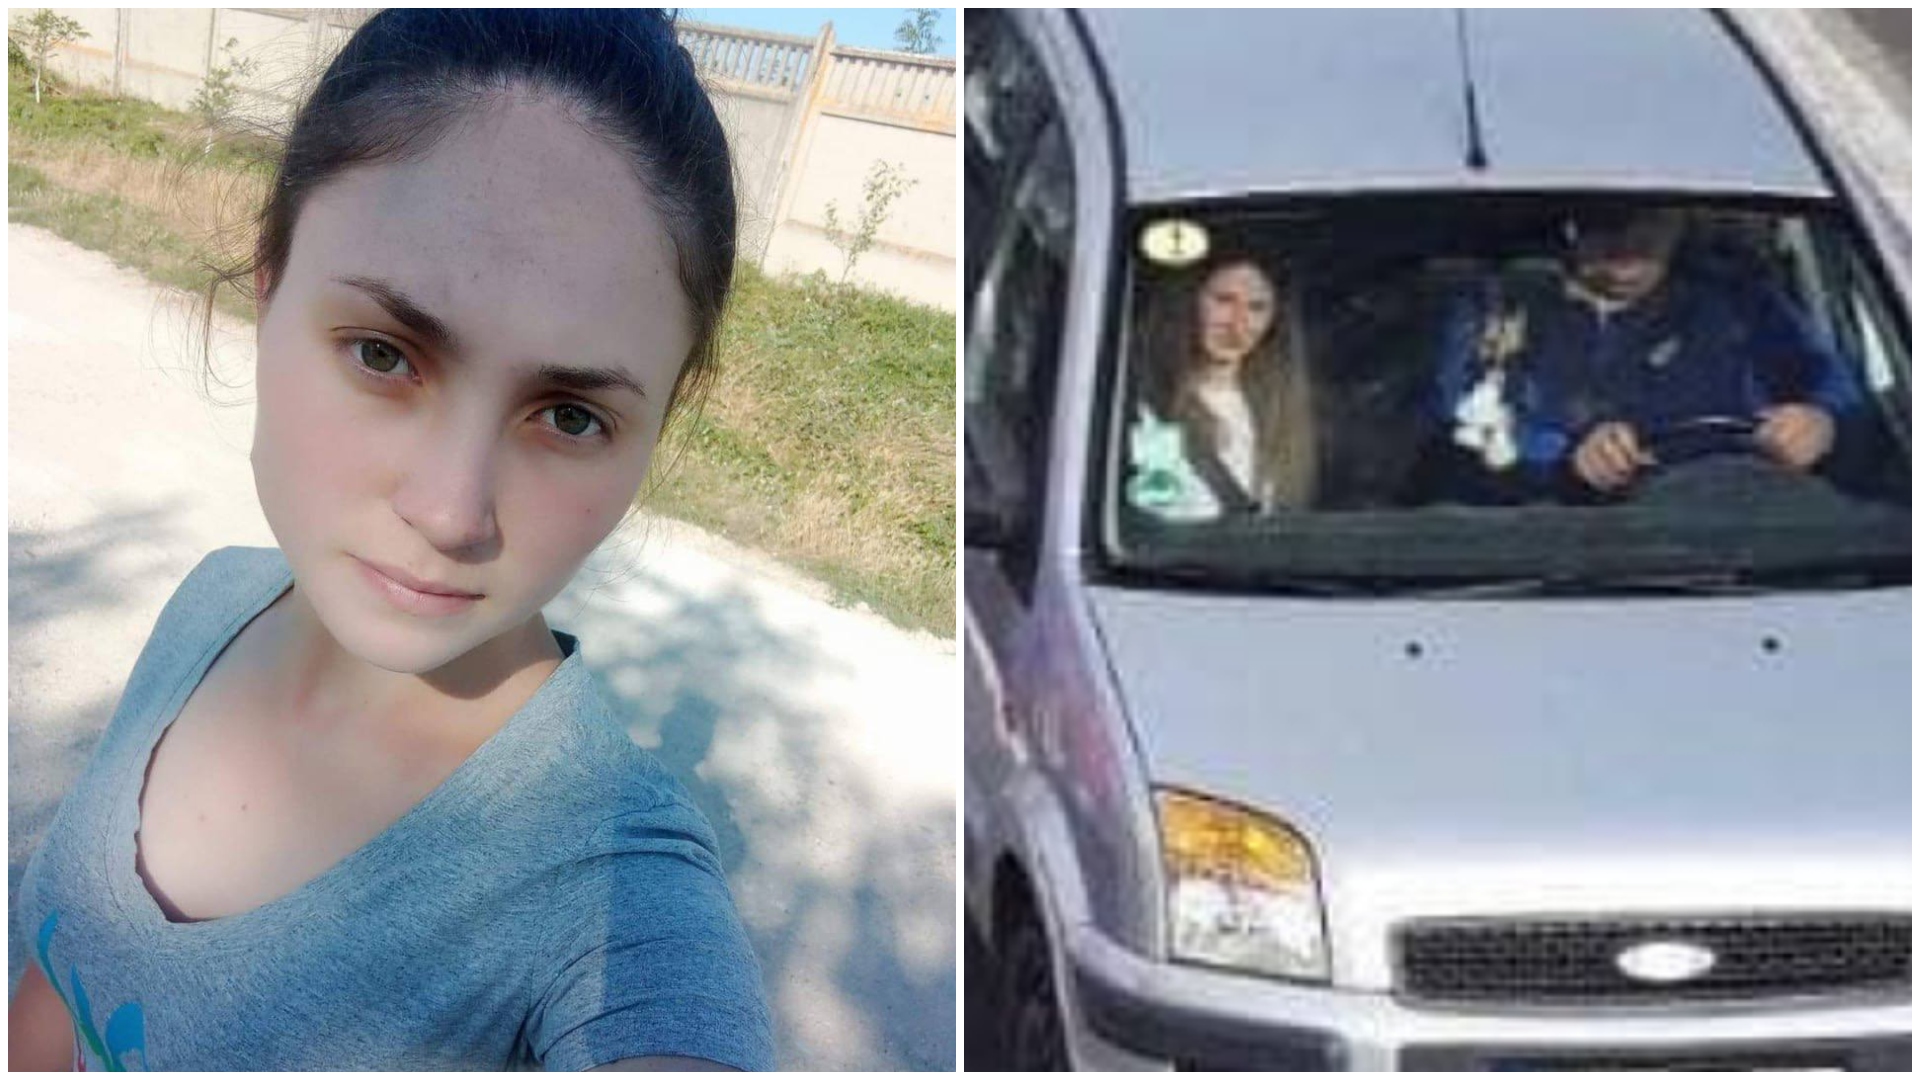 Ana Maria, tânăra însărcinată dispărută după ce s-a urcat într-o mașină la ocazie acum 8 zile, a fost găsită moartă. Șoferul a fost reținut